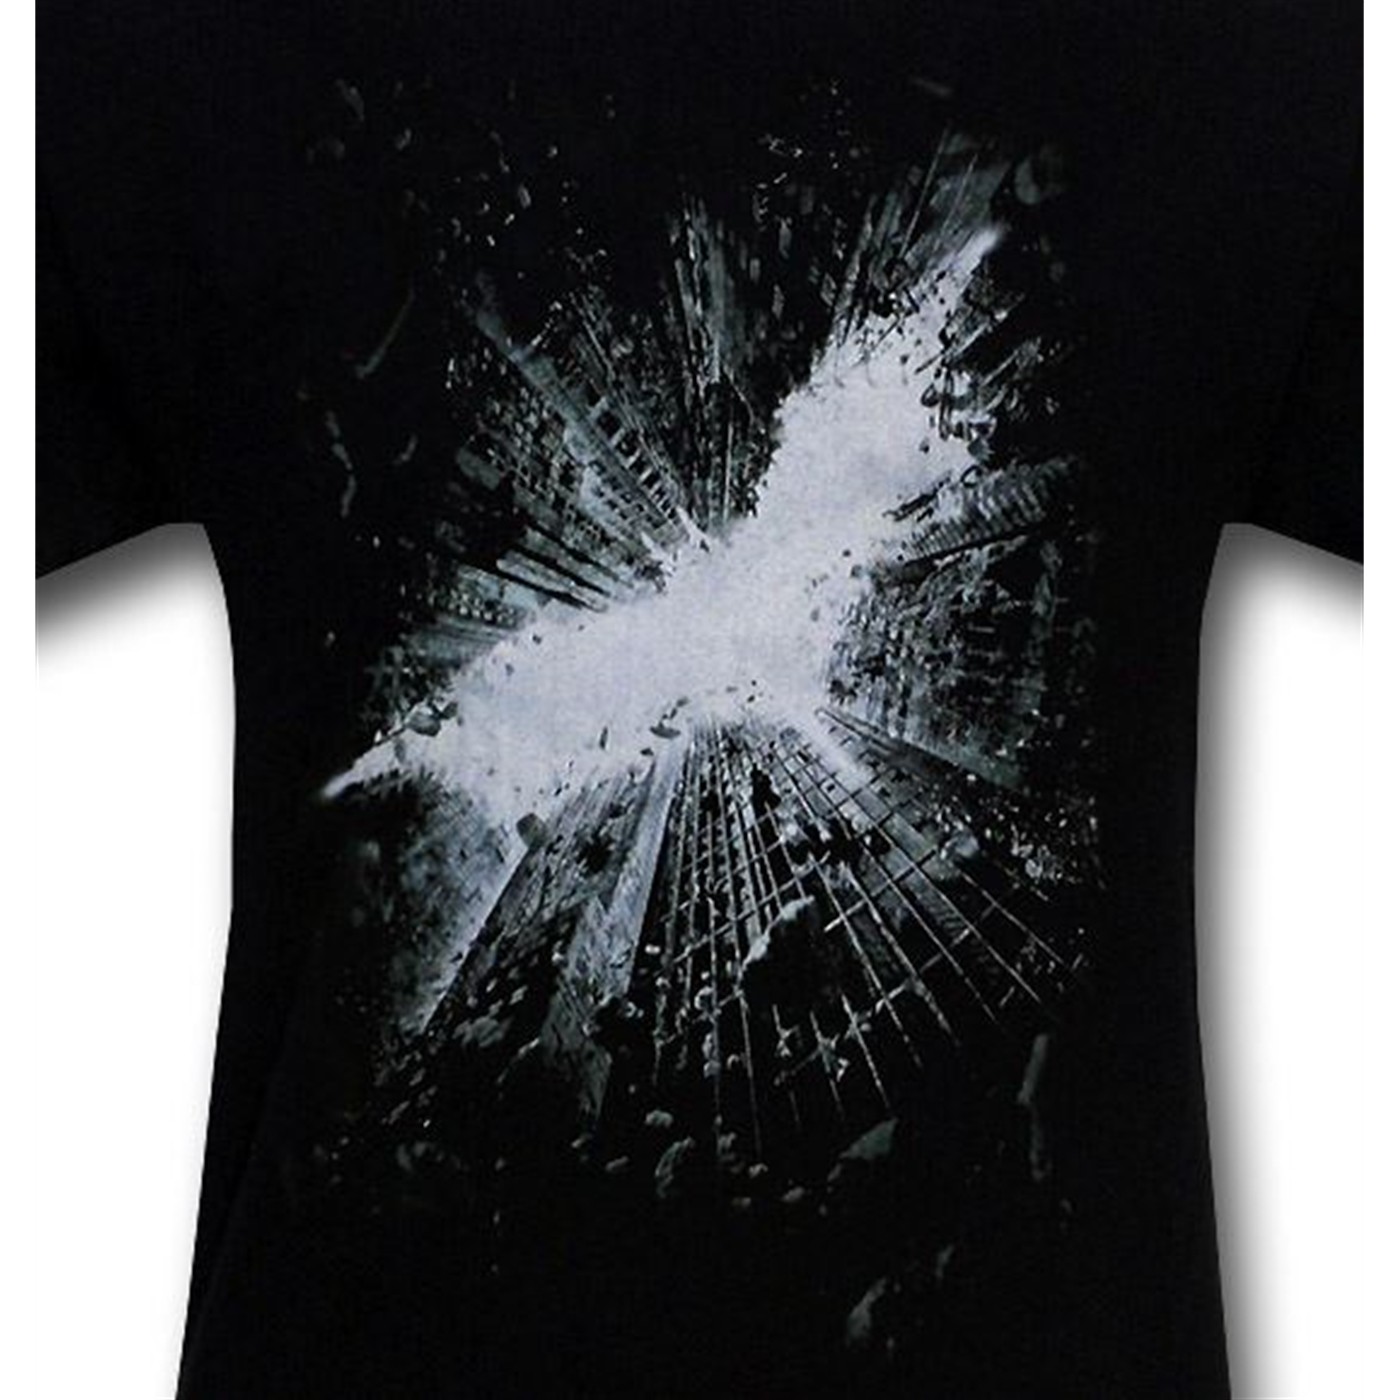 Dark Knight Rises Bat Drop Symbol Kids T-Shirt